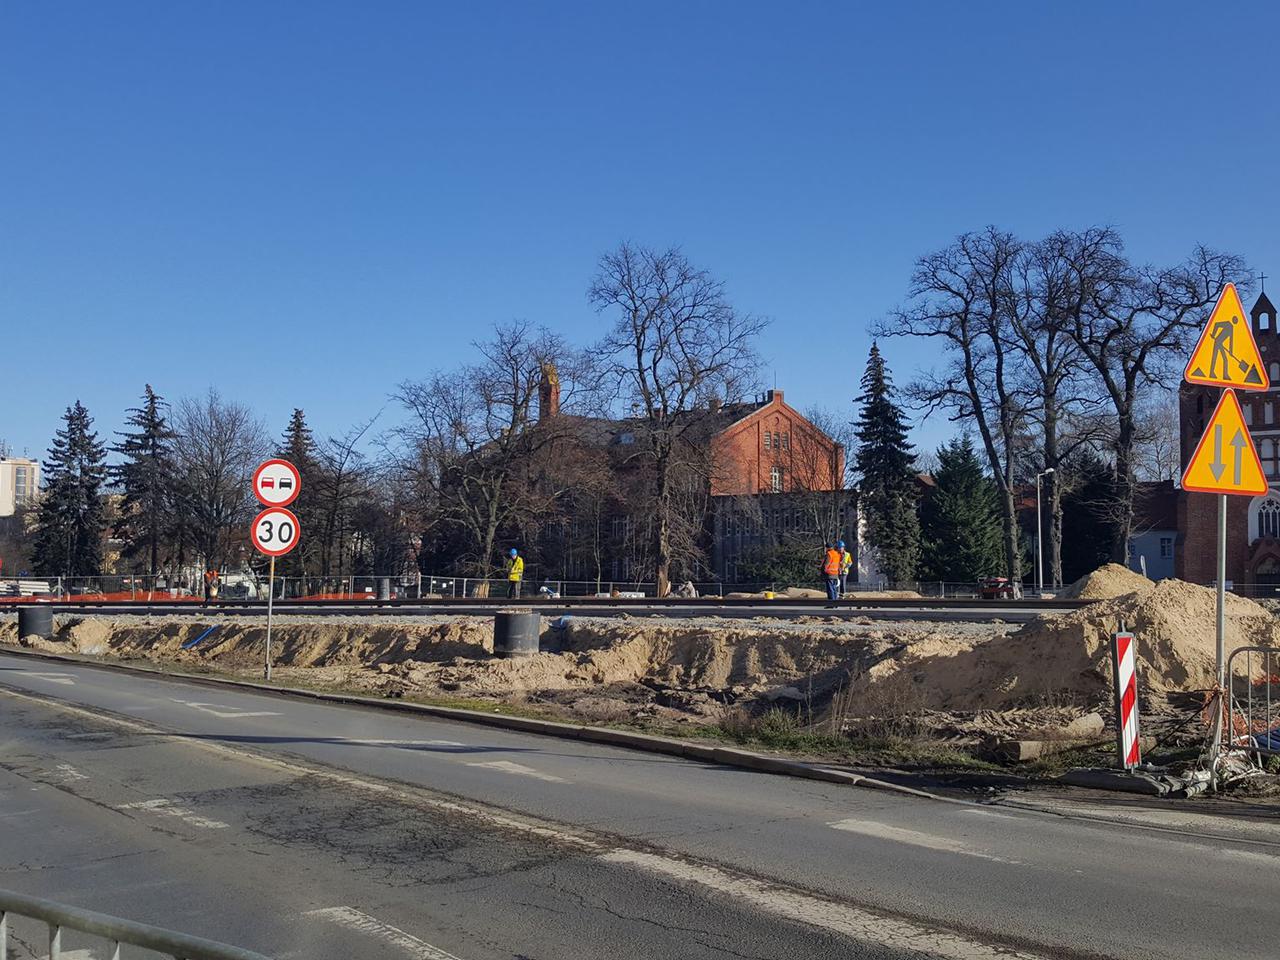 Zniknie kamienica w centrum Bydgoszczy. Są utrudnienia dla kierowców i pieszych [WIDEO] 